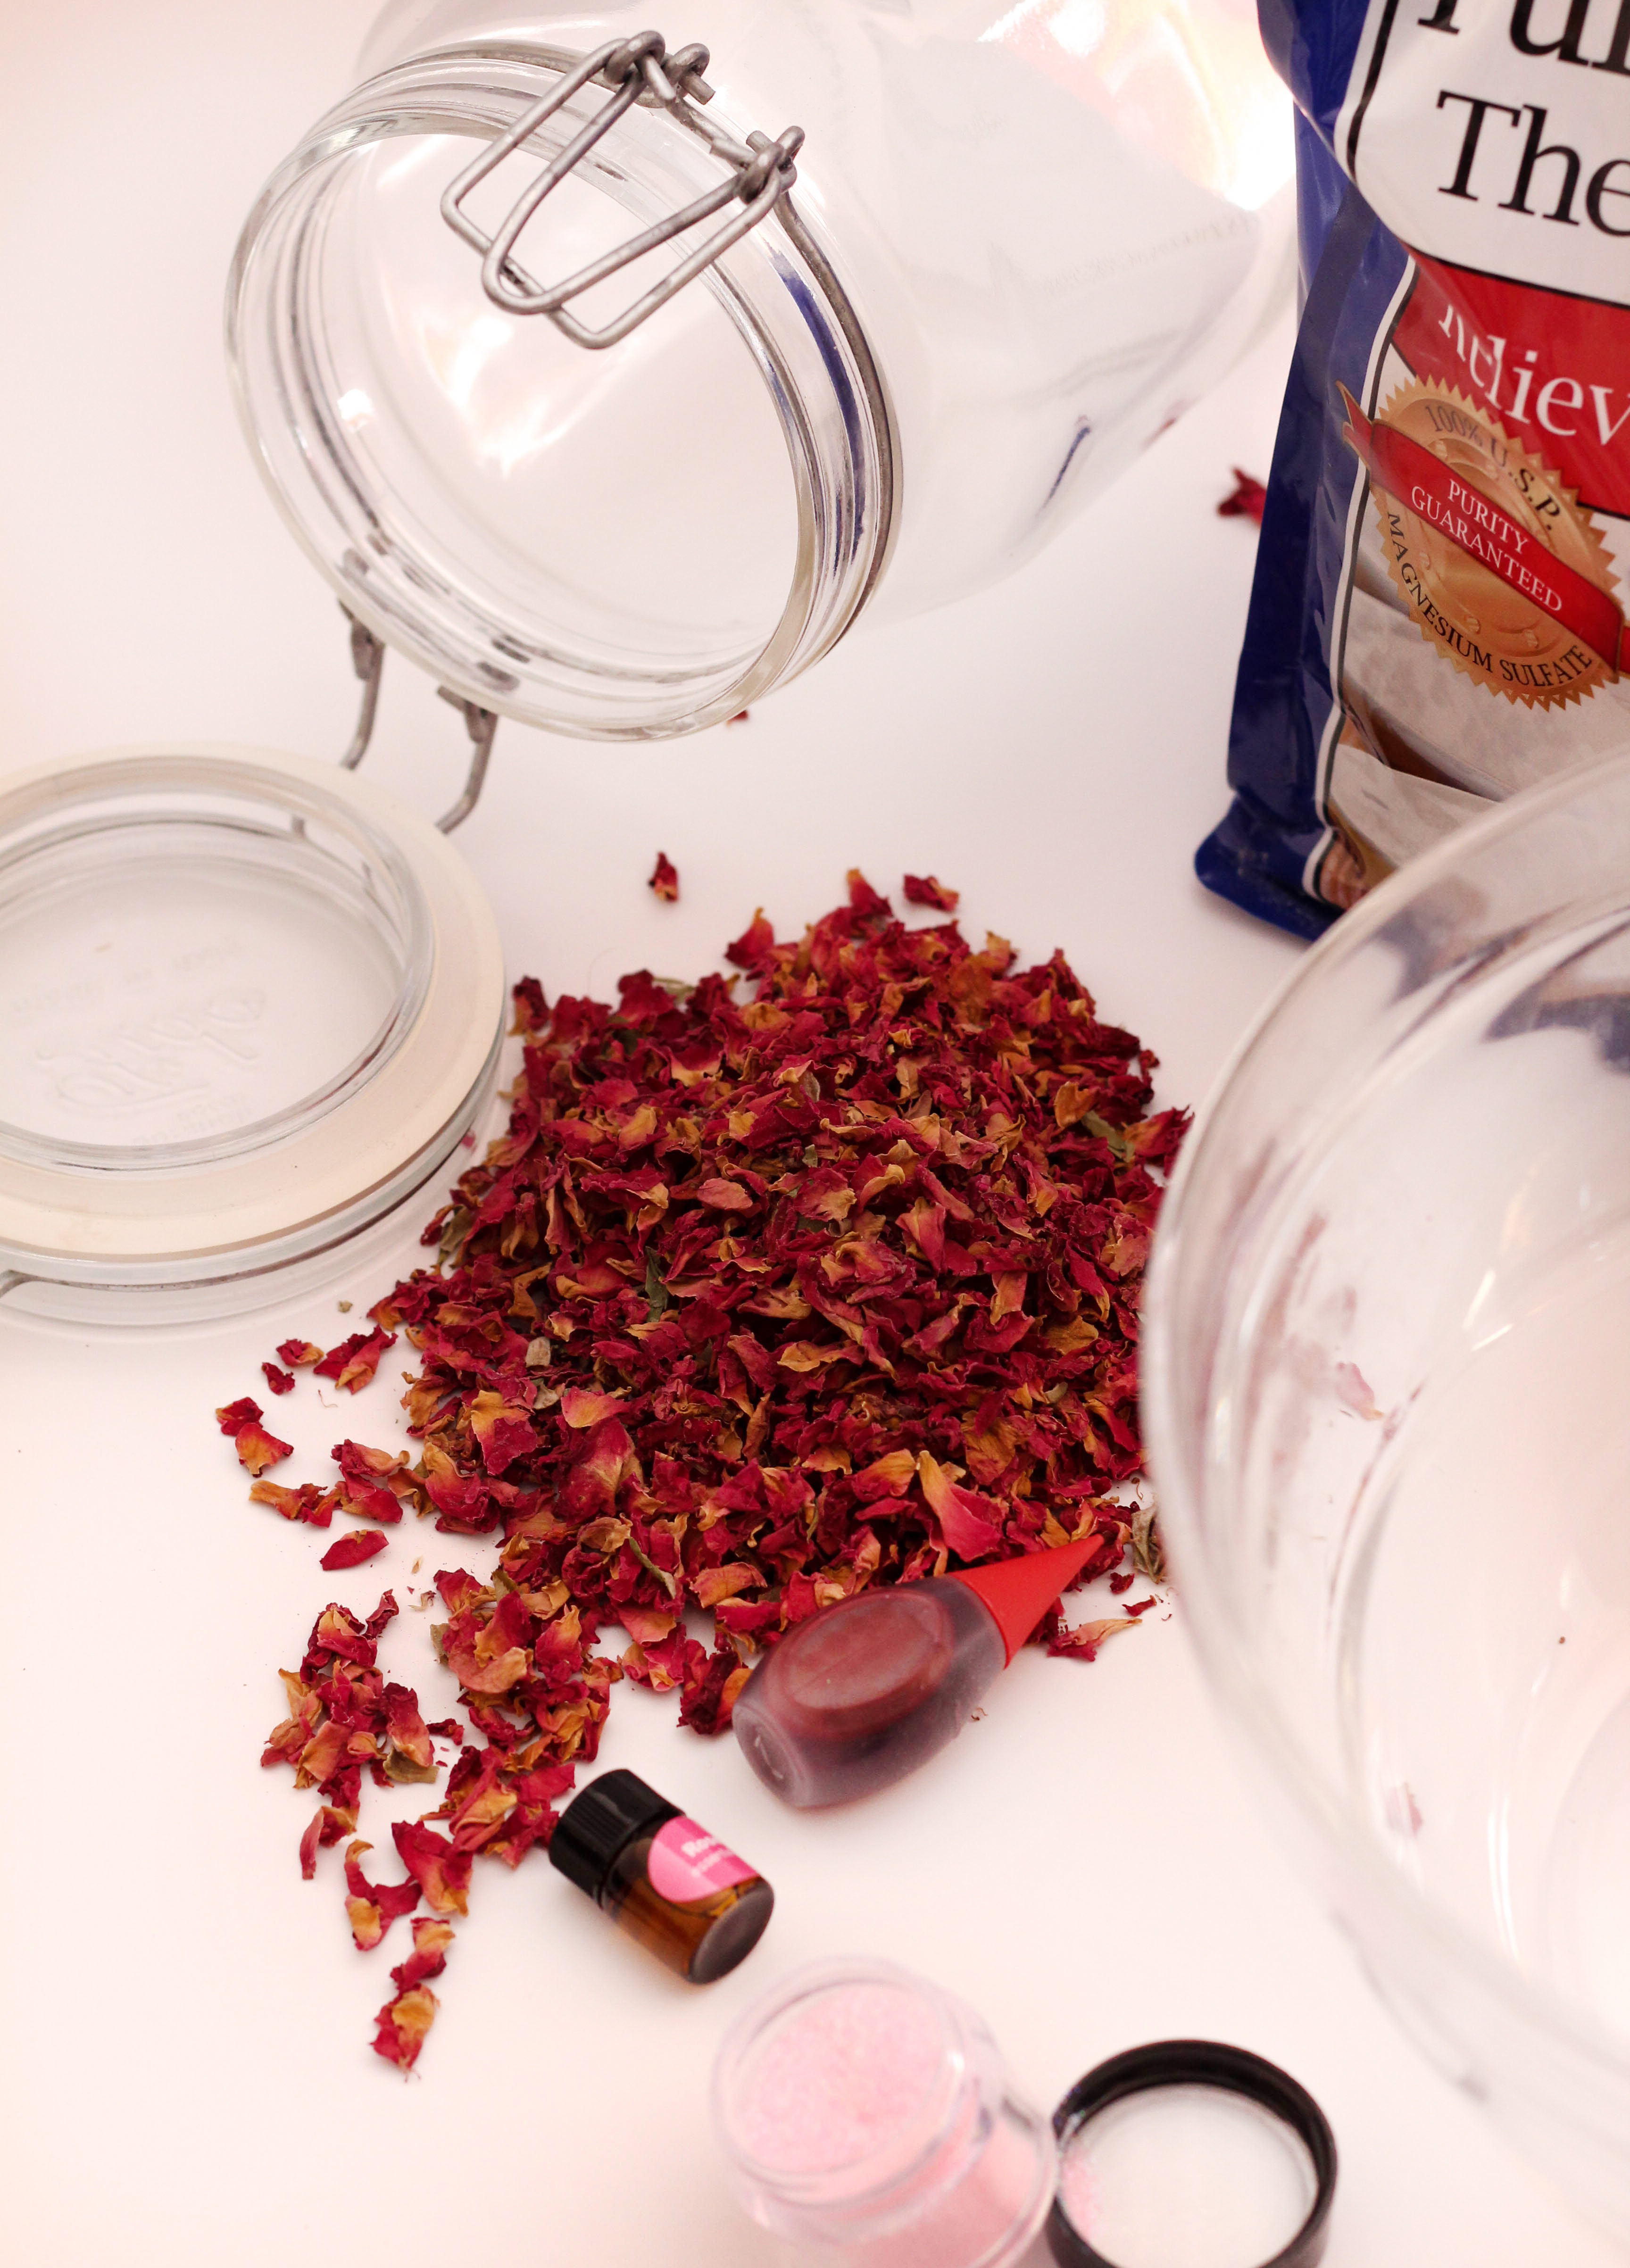 shimmery-rose-petal-bath-salts-ingredients